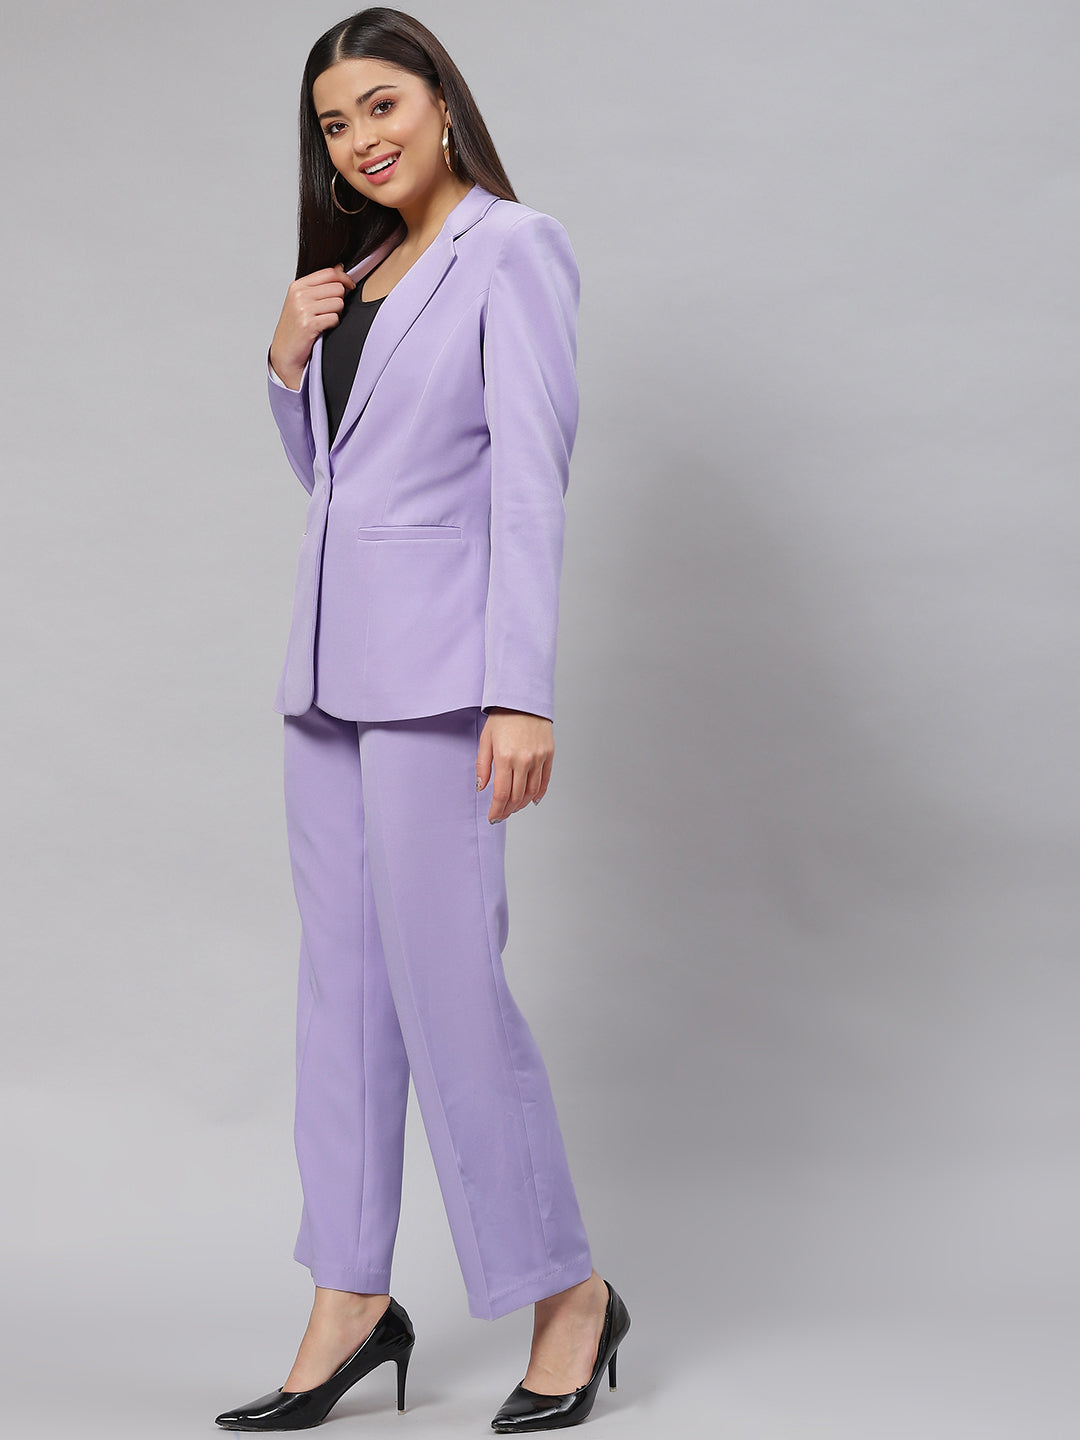 Lavender Poly Cotton Notched Lapel Pant Suit